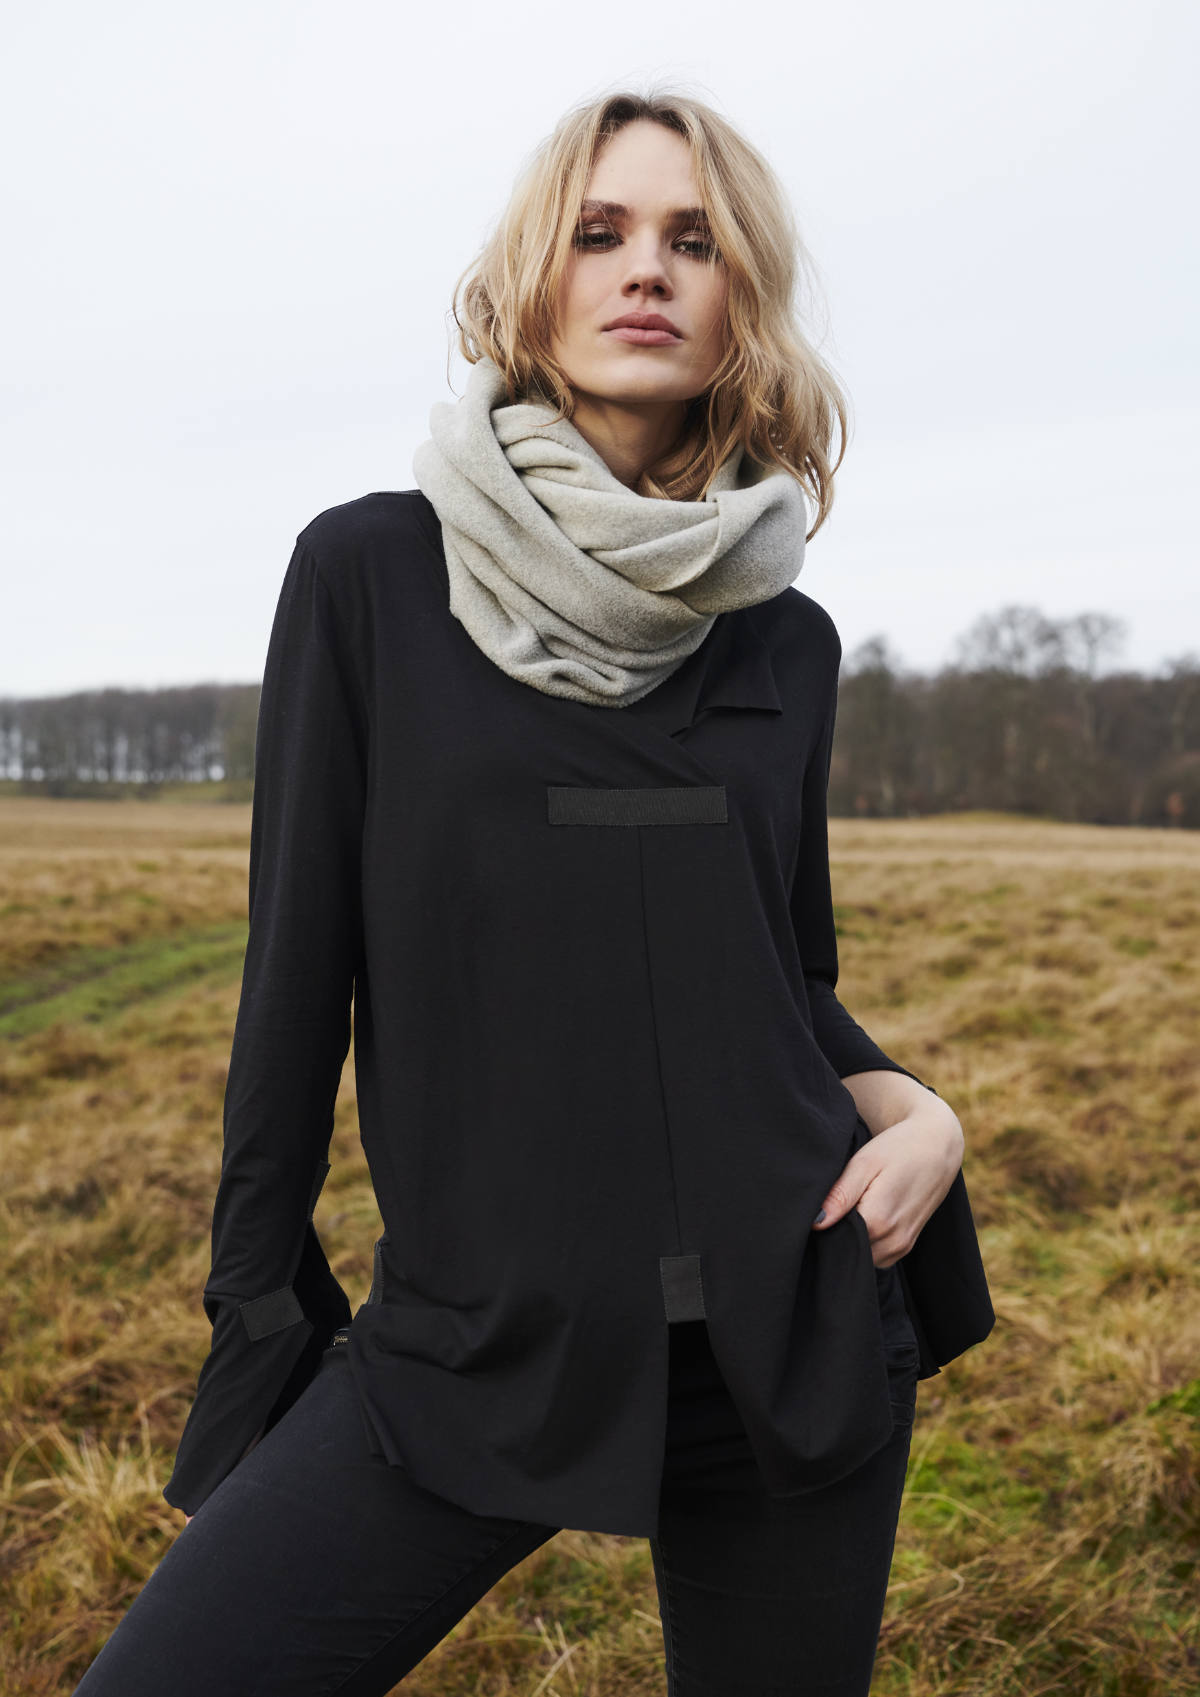 Henriette Steffensen Fall Winter 2020 Collection - Luxferity Magazine